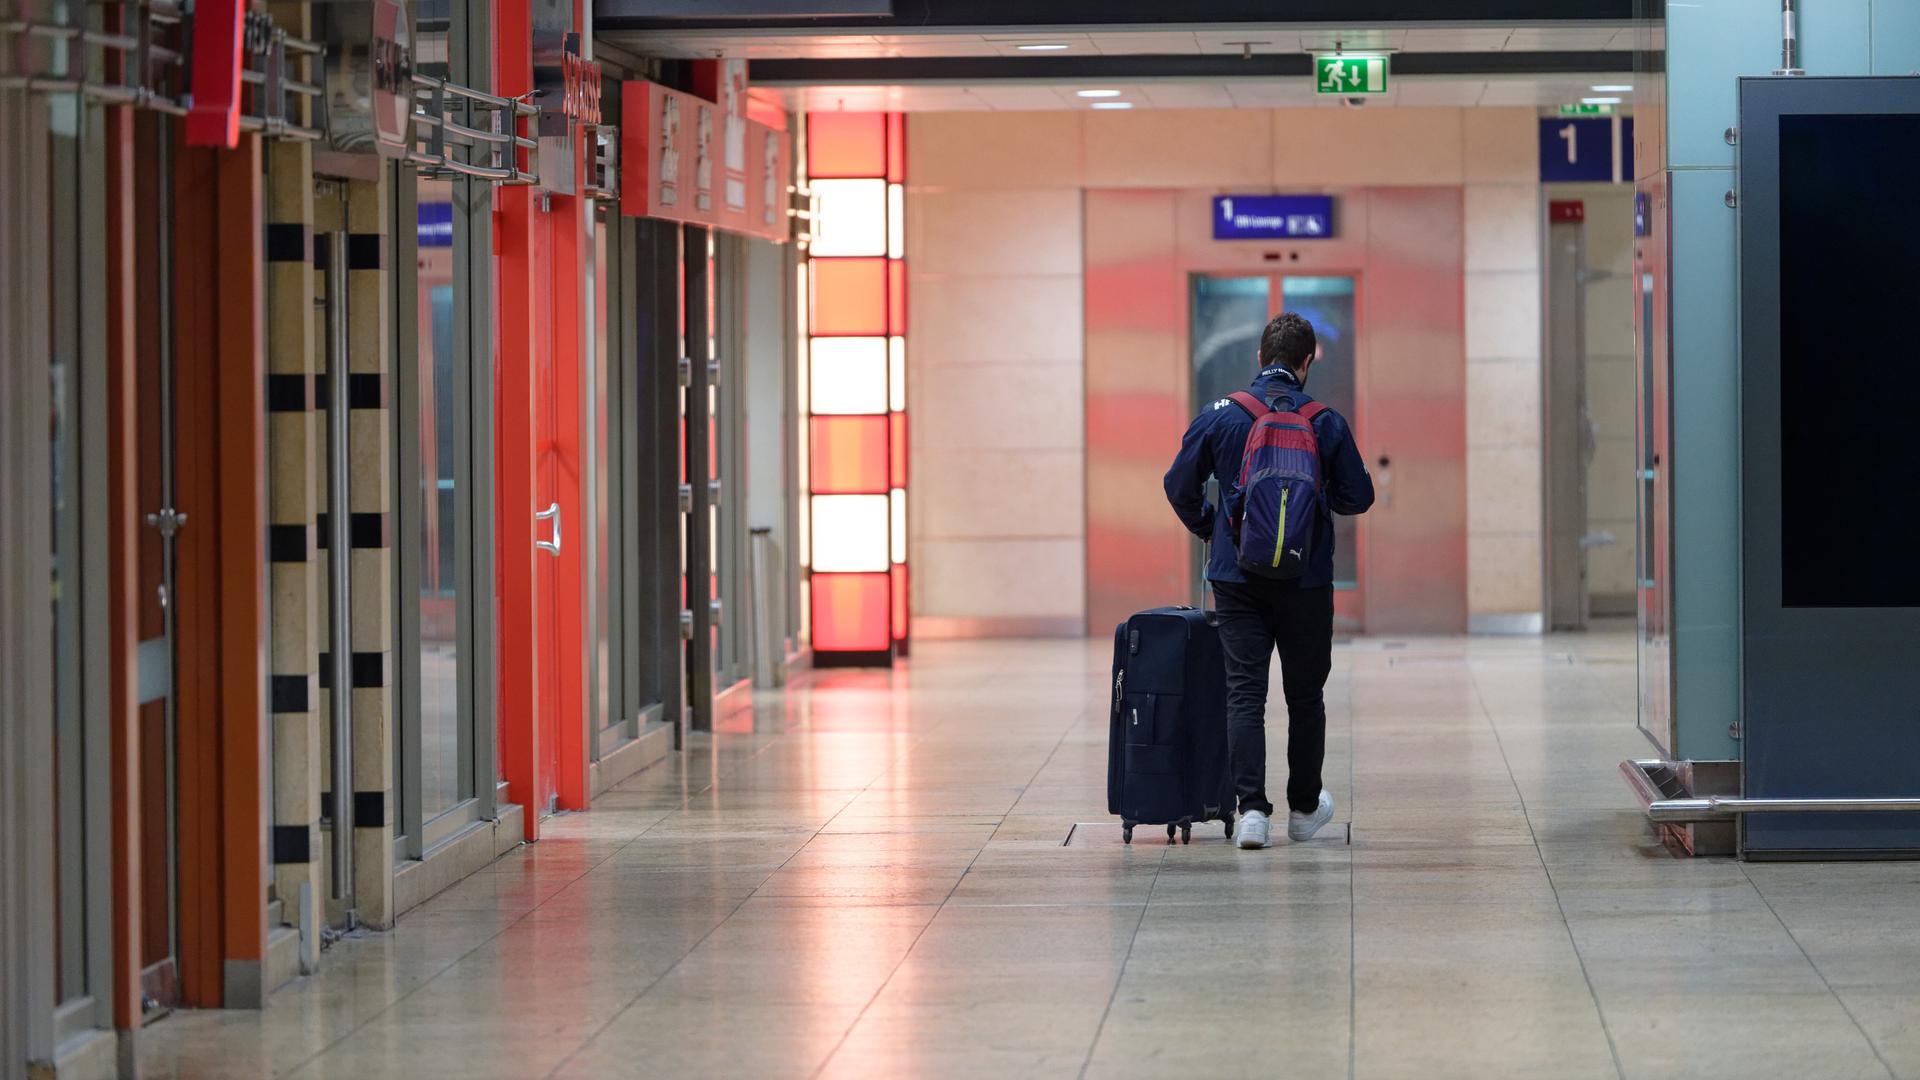 Weitgehend leer ist der Hauptbahnhof Köln, ein einziger Passagier geht mit seinem Gepäck durch einen Gang.